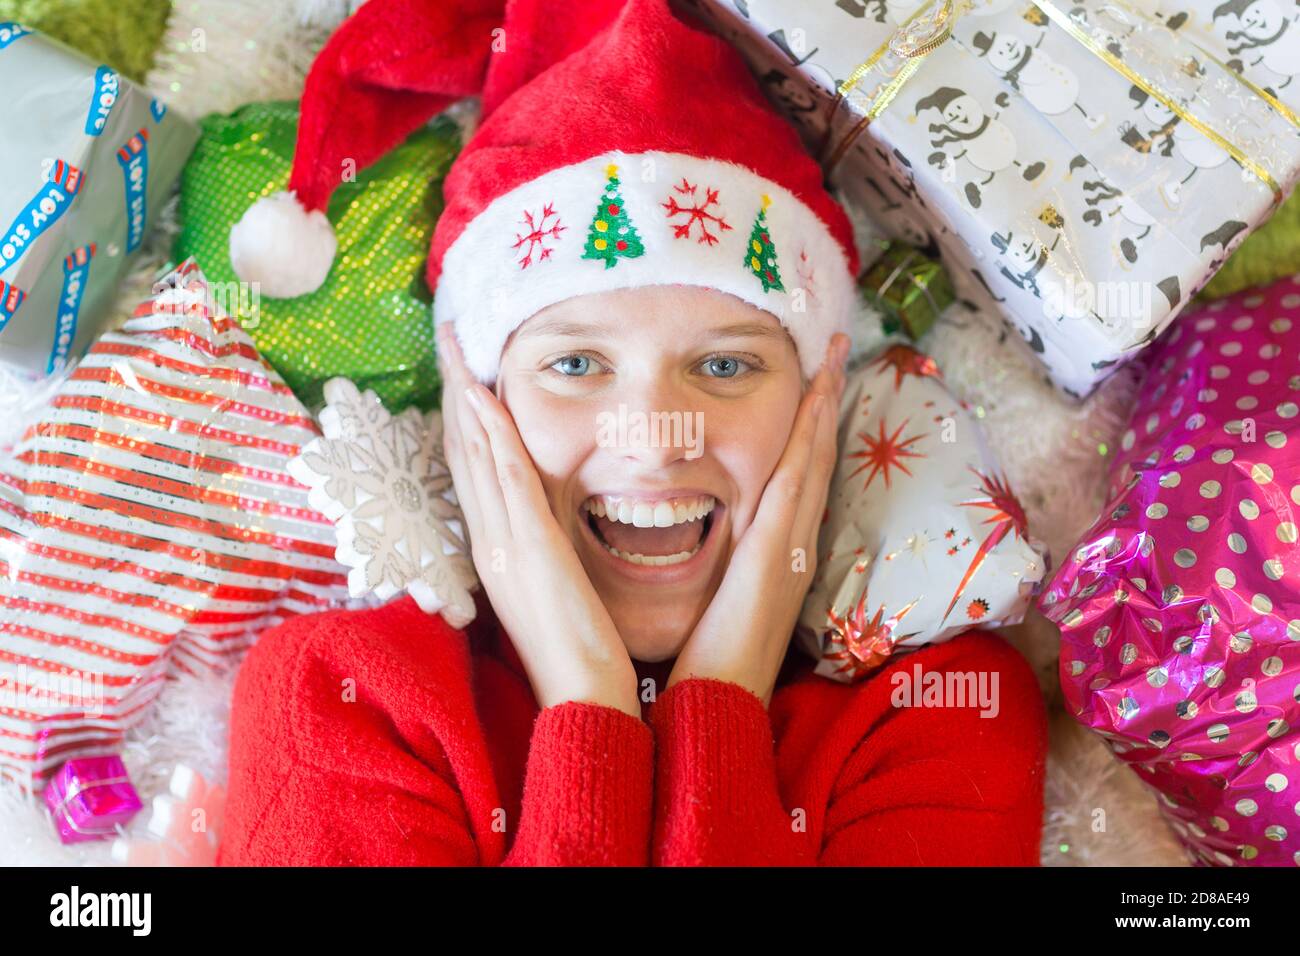 Weihnachtszeit! Freudig aufgeregt junge Frau liegt umgeben von vielen Geschenken tragen einen roten Weihnachtsmann Hut. Stockfoto